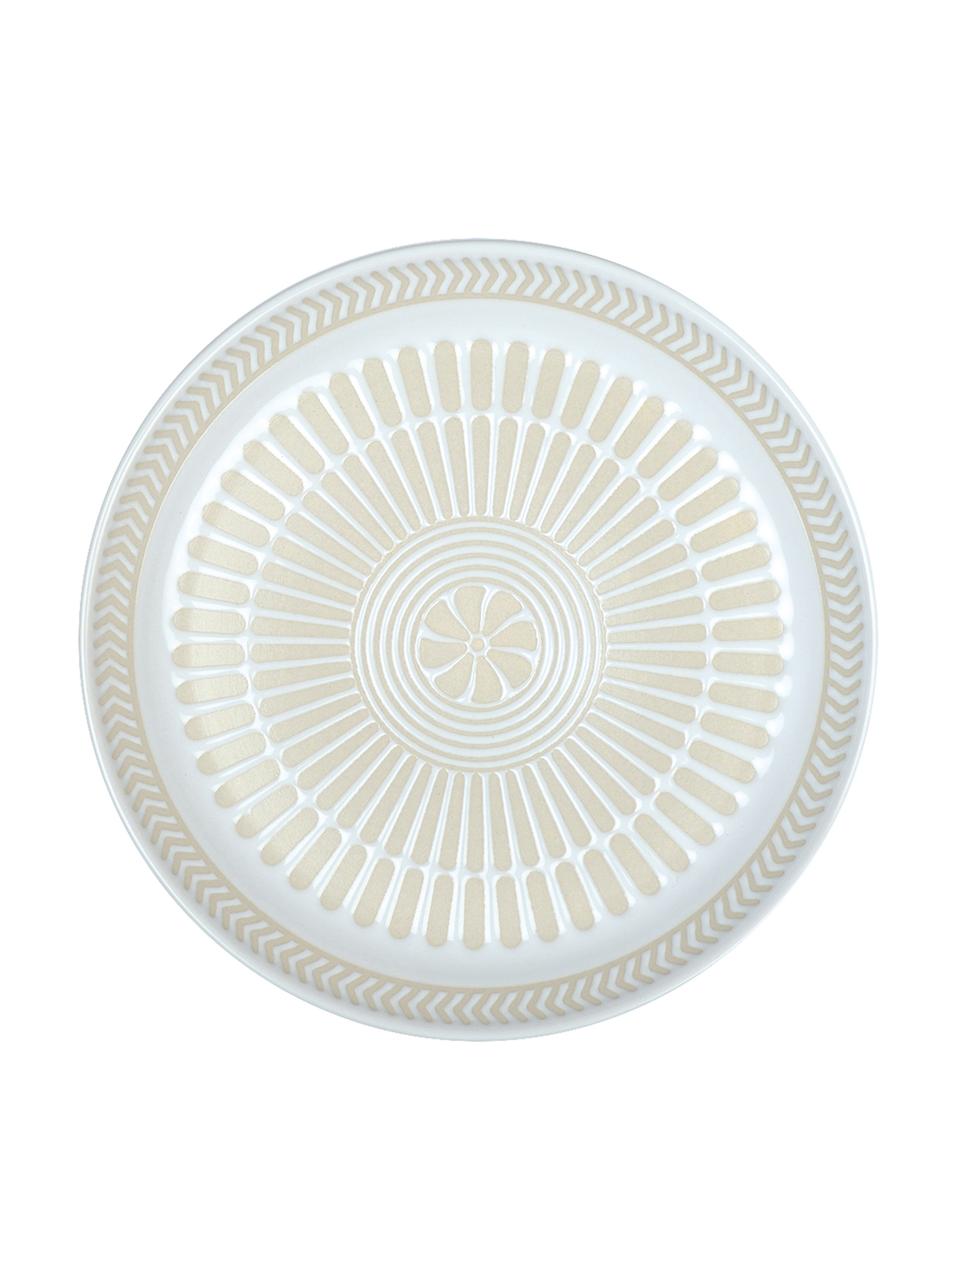 Piattino da dessert in porcellana con motivo interno a rilievo Sonia 2 pz, Porcellana, Bianco, Ø 16 cm